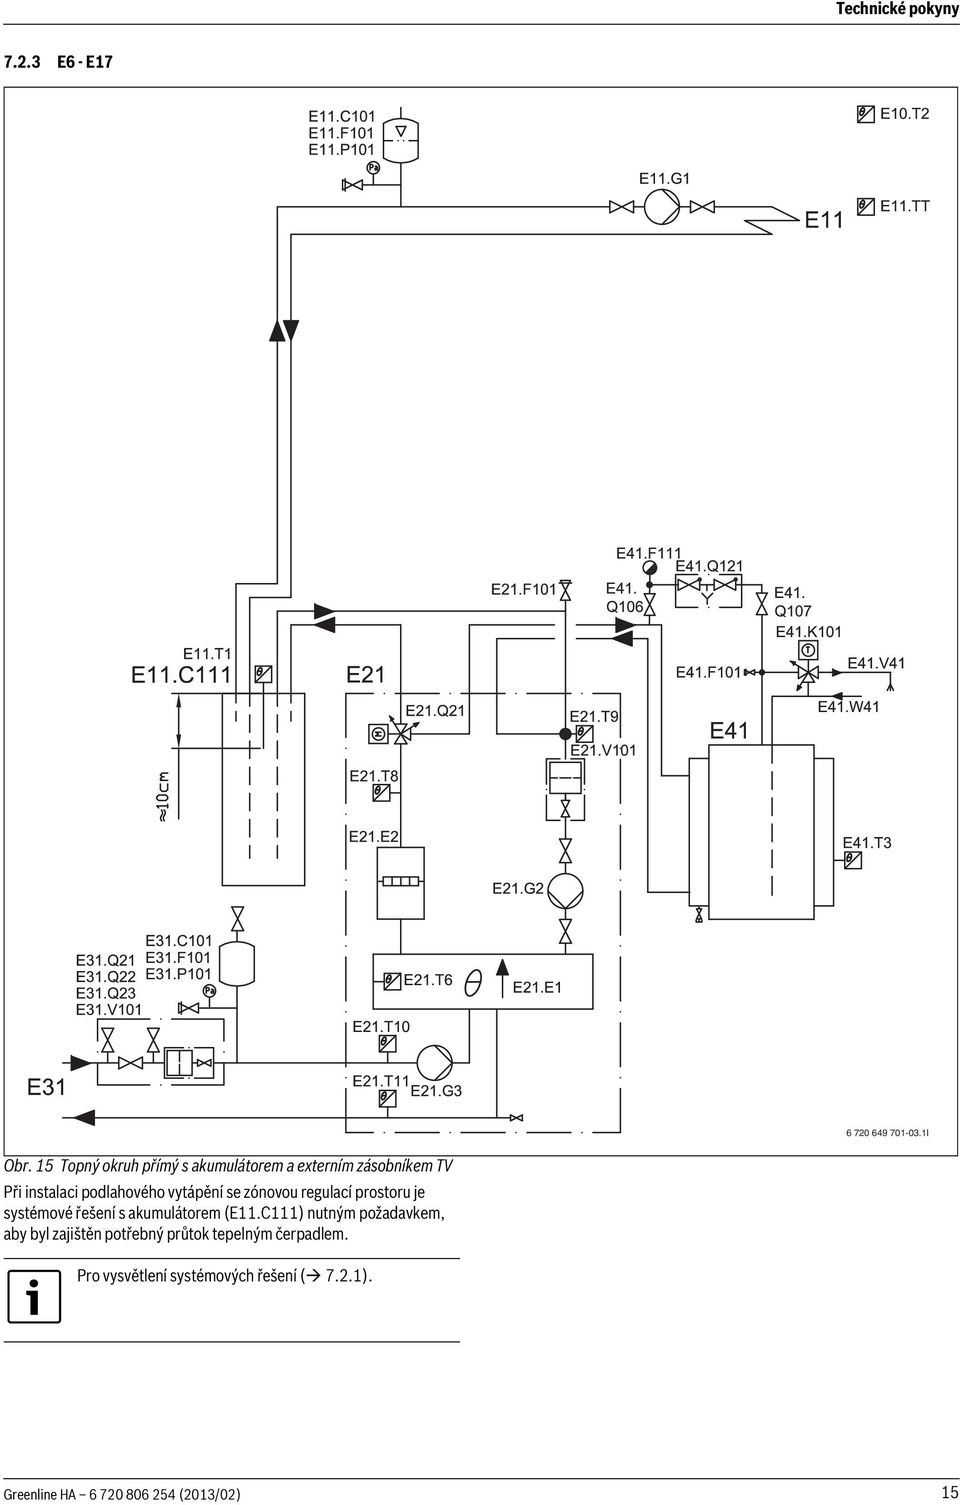 vytápění se zónovou regulací prostoru je systémové řešení s akumulátorem (E.